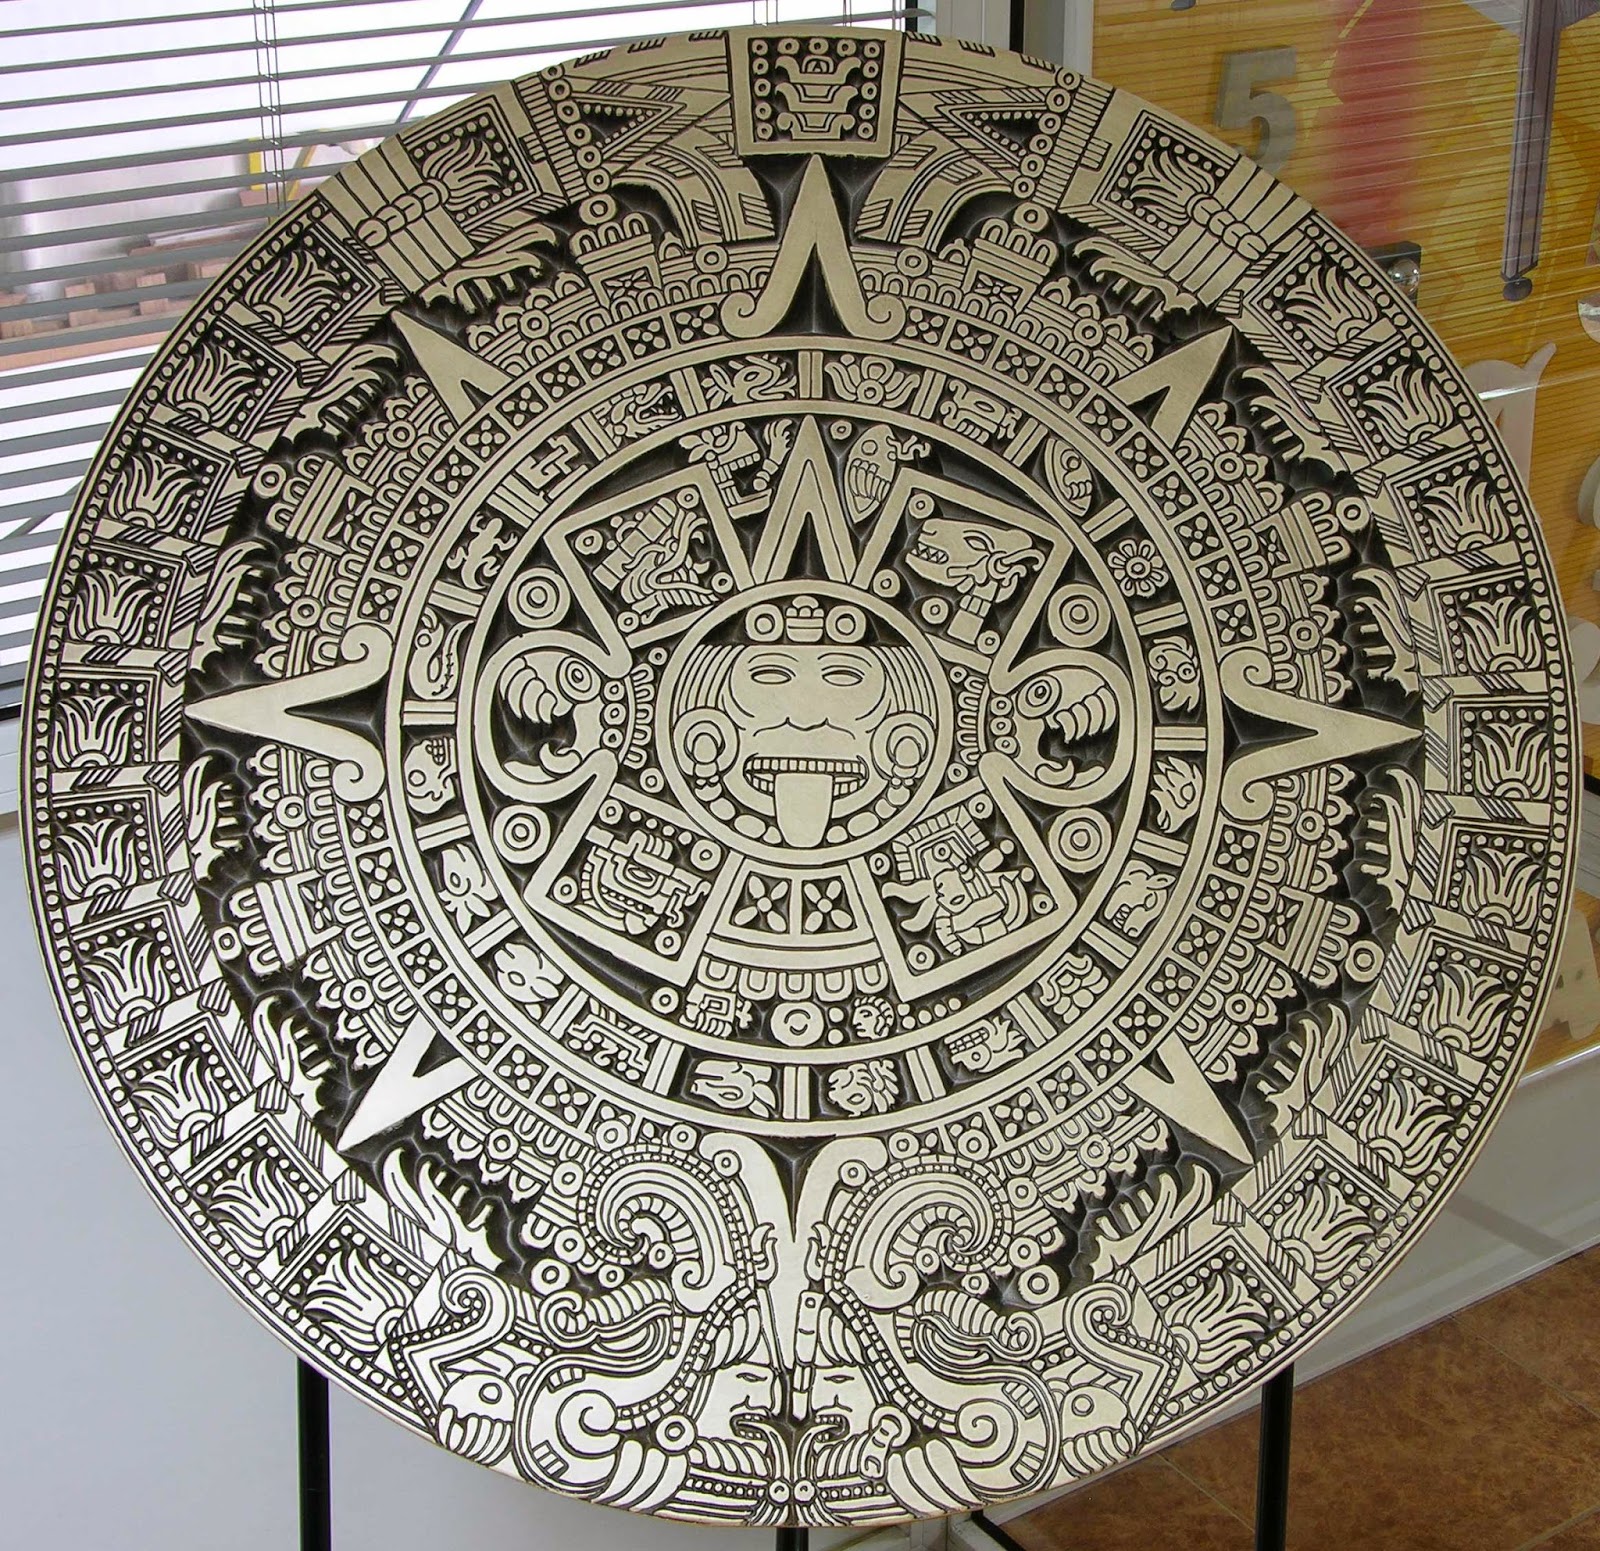 Сюжет и композиция календарь майя. Солнечный календарь ацтеков. Календарь Майя. Камень ацтеков. Часы Майя древние.